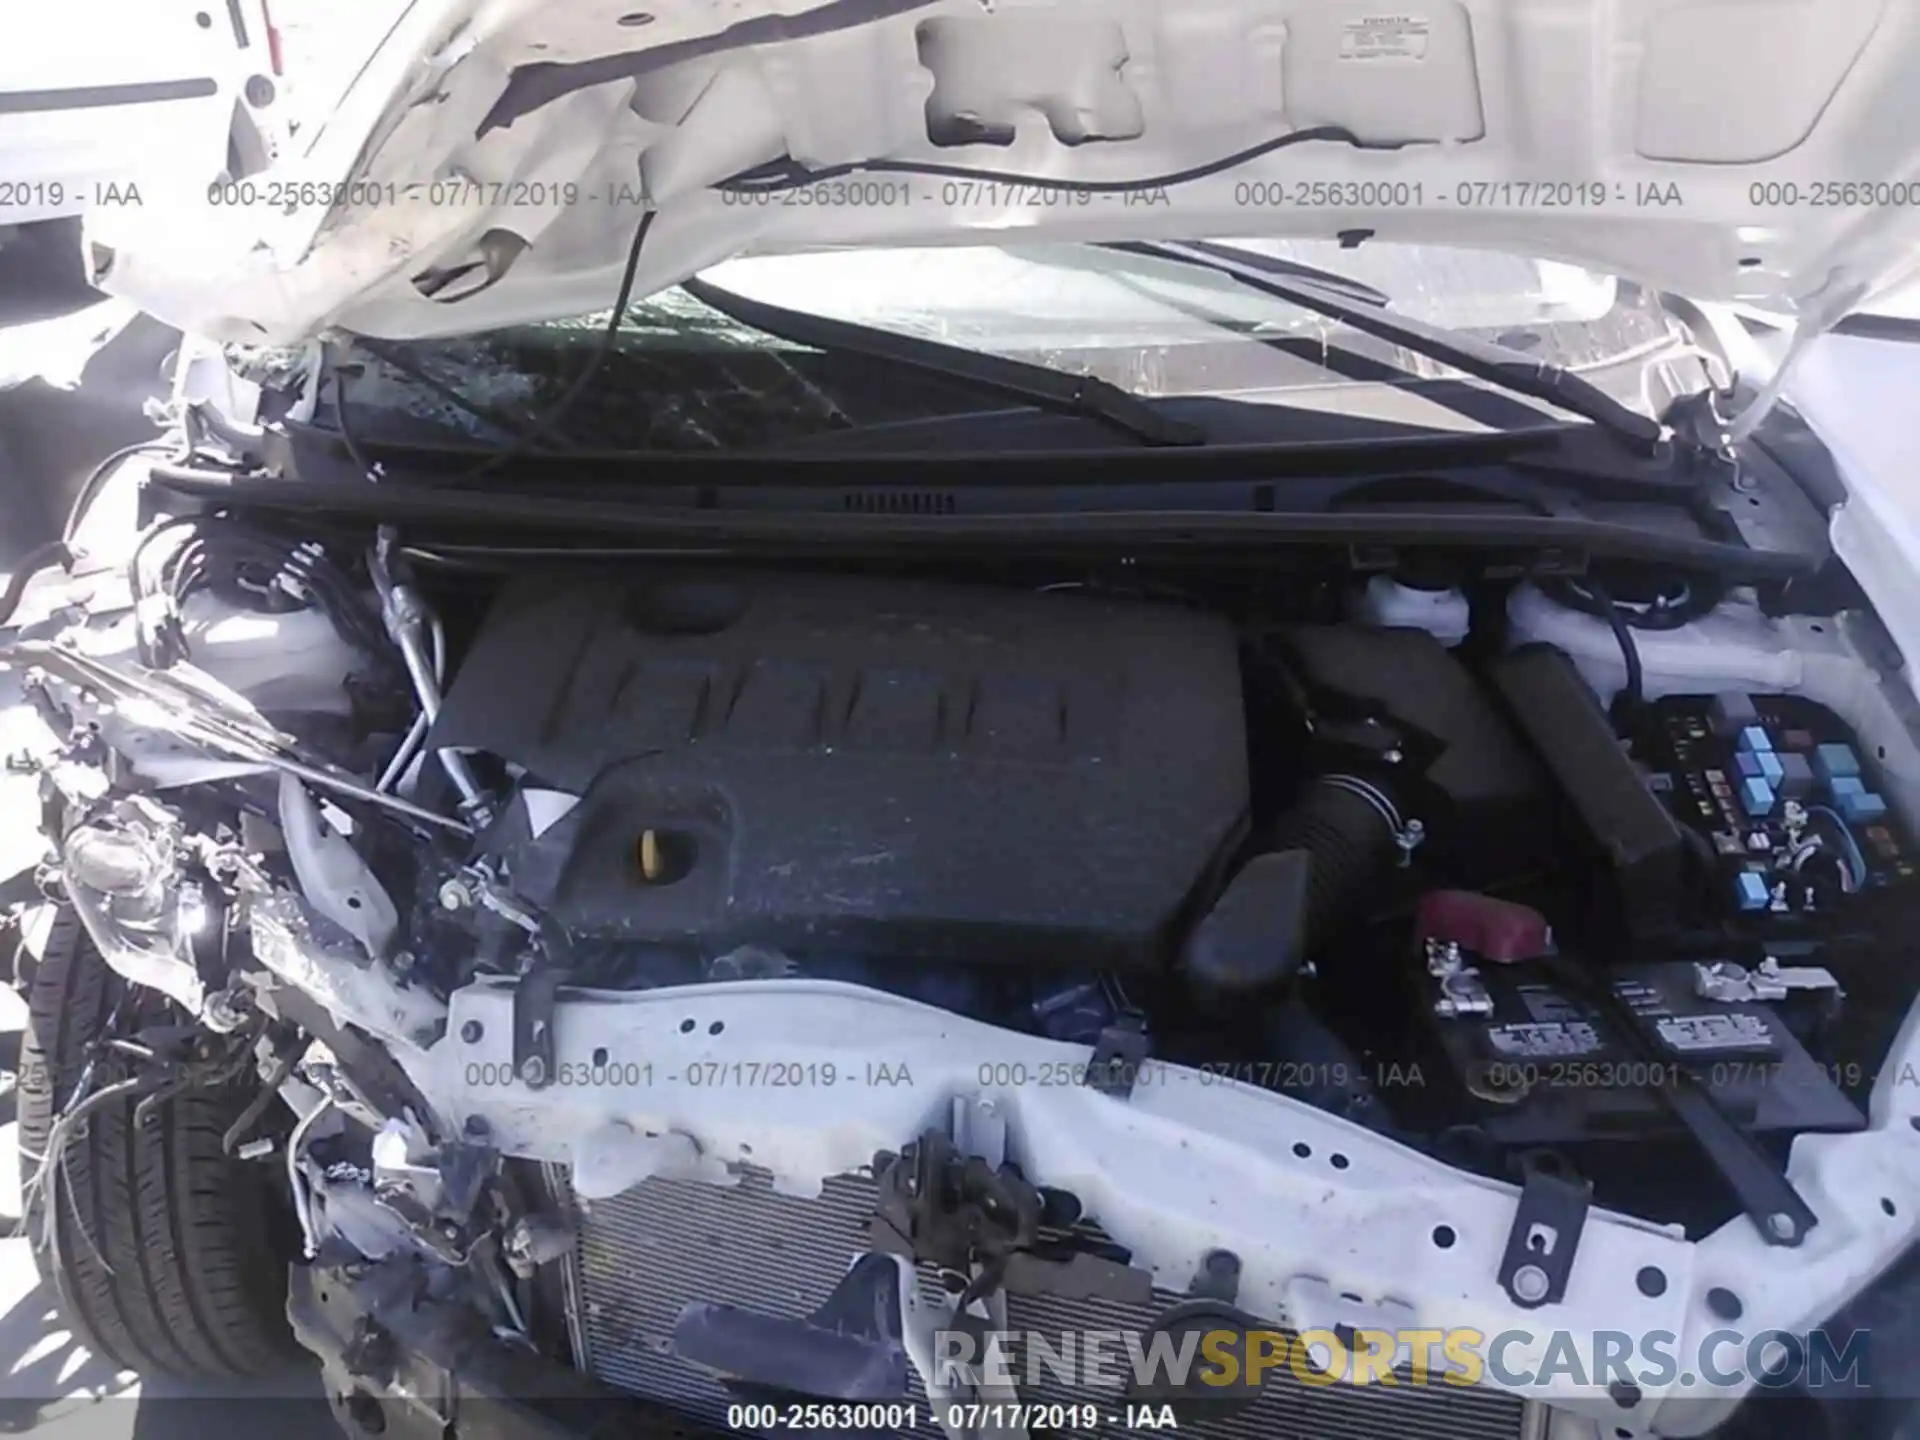 10 Photograph of a damaged car 5YFBURHE3KP932736 TOYOTA COROLLA 2019